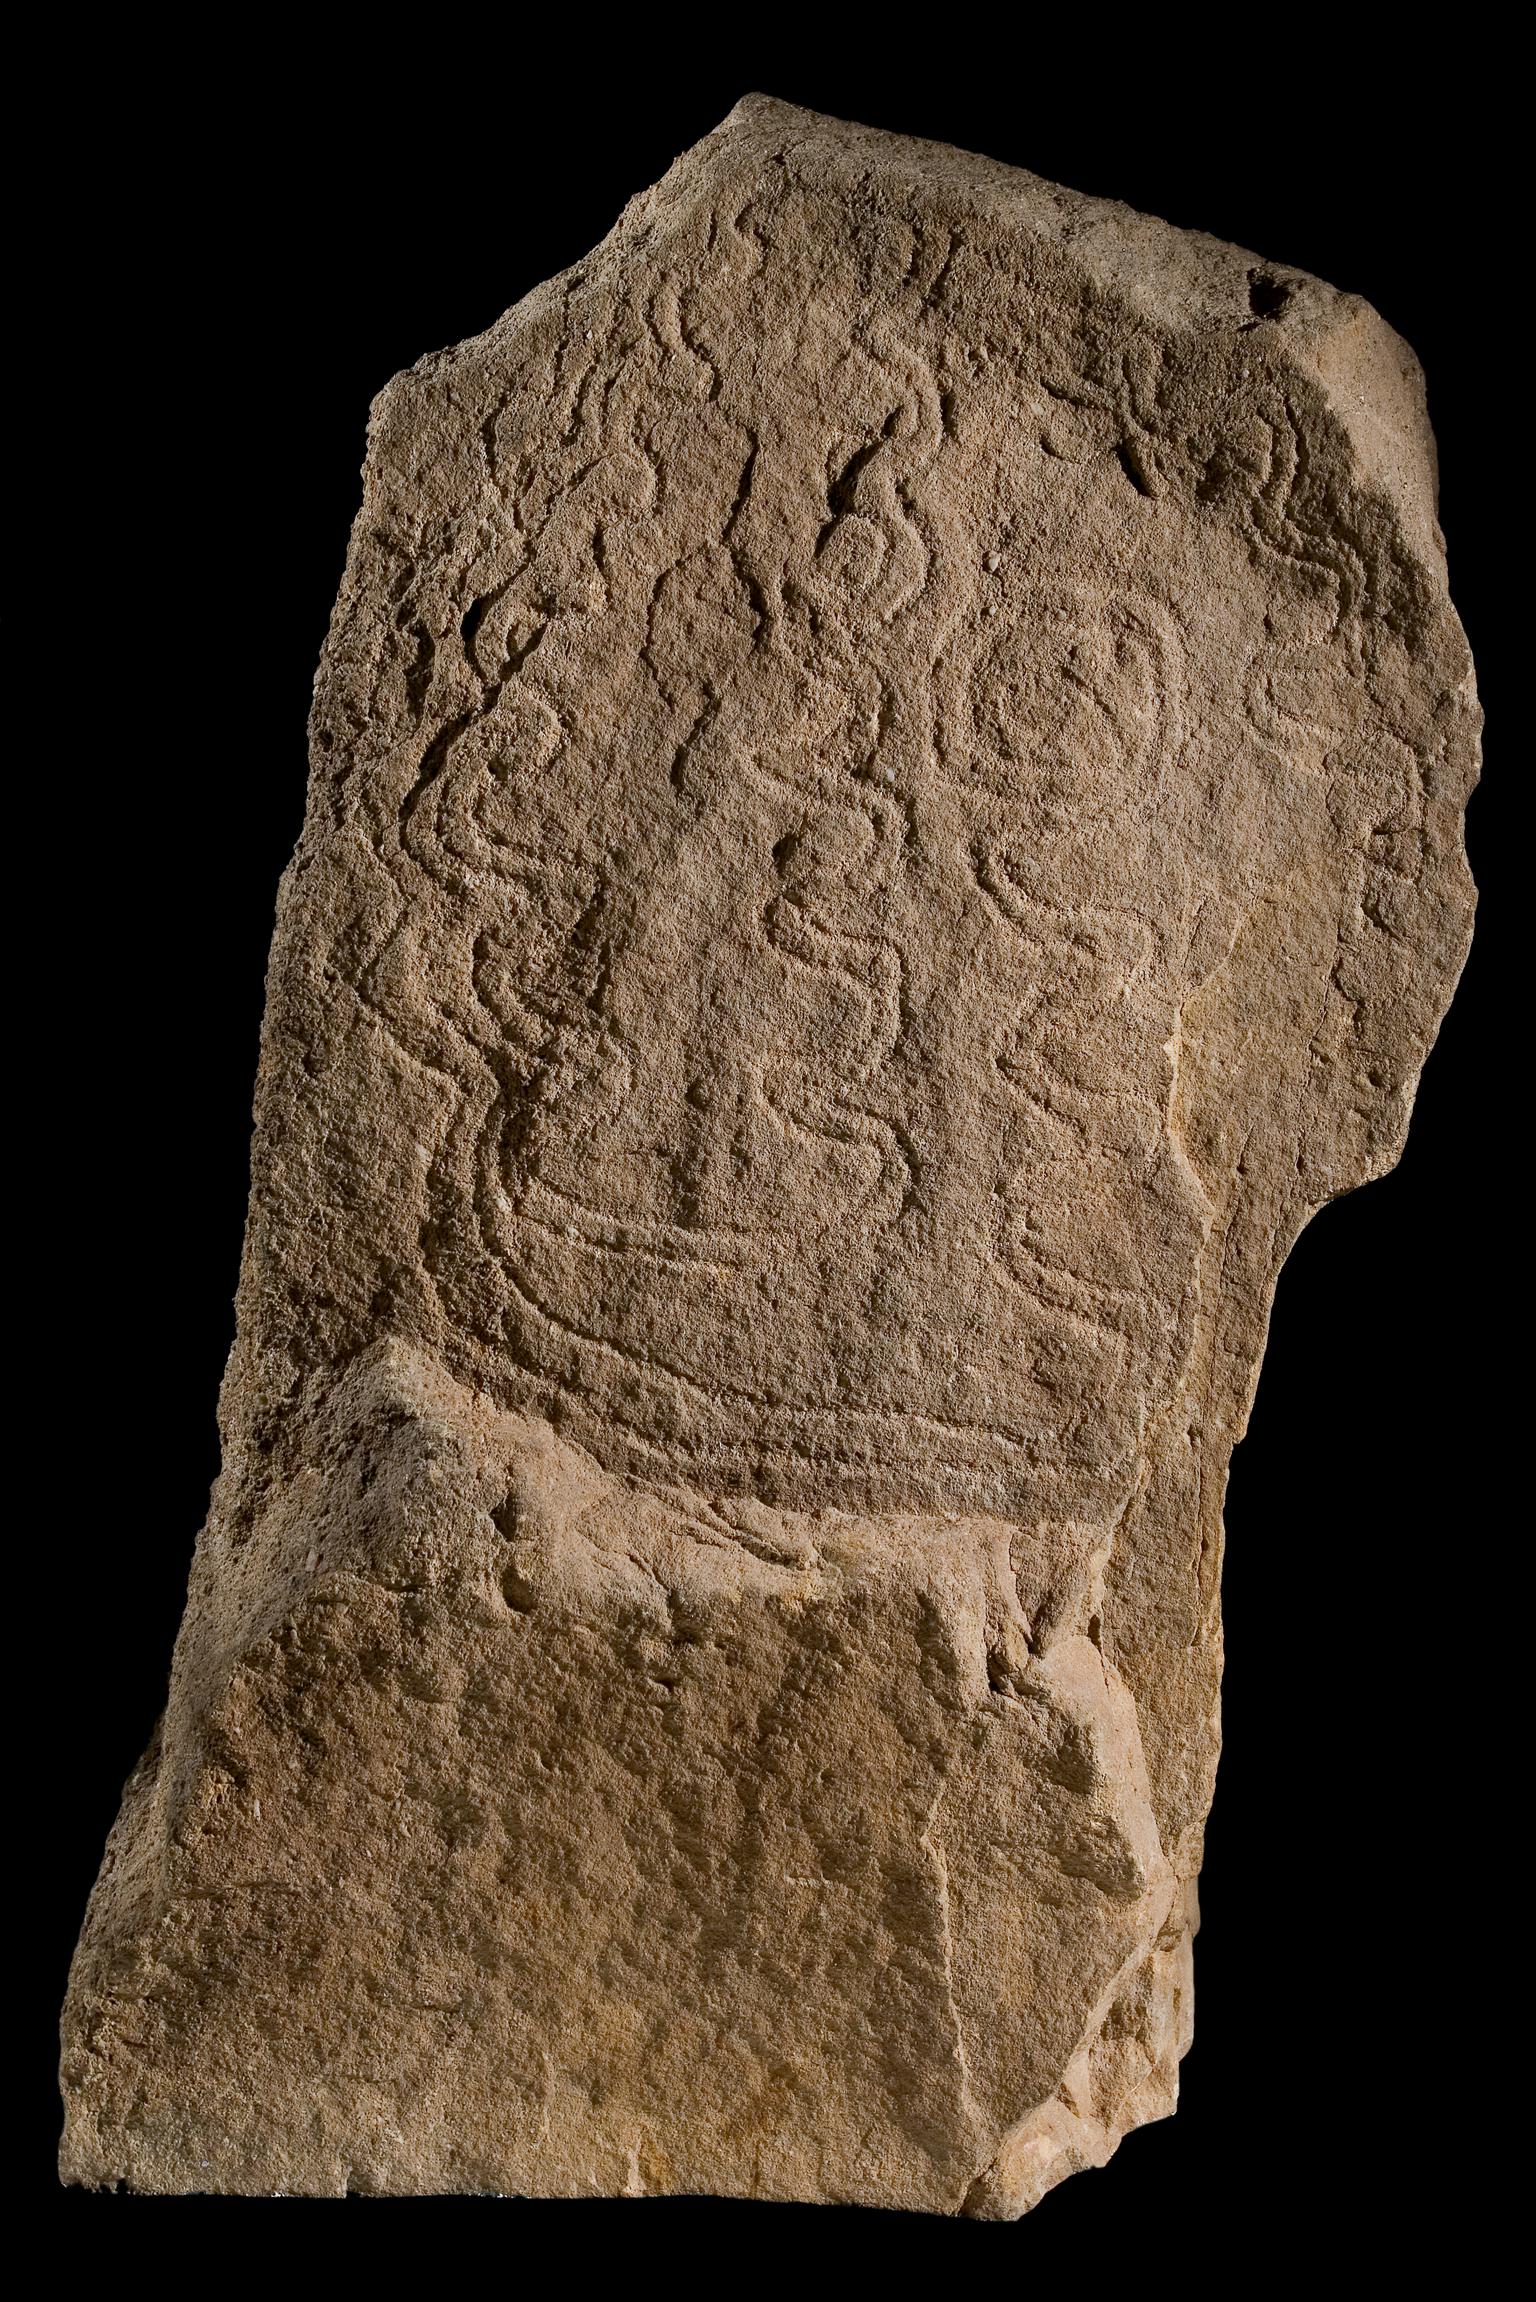 Bryn-celli-ddu pattern stone